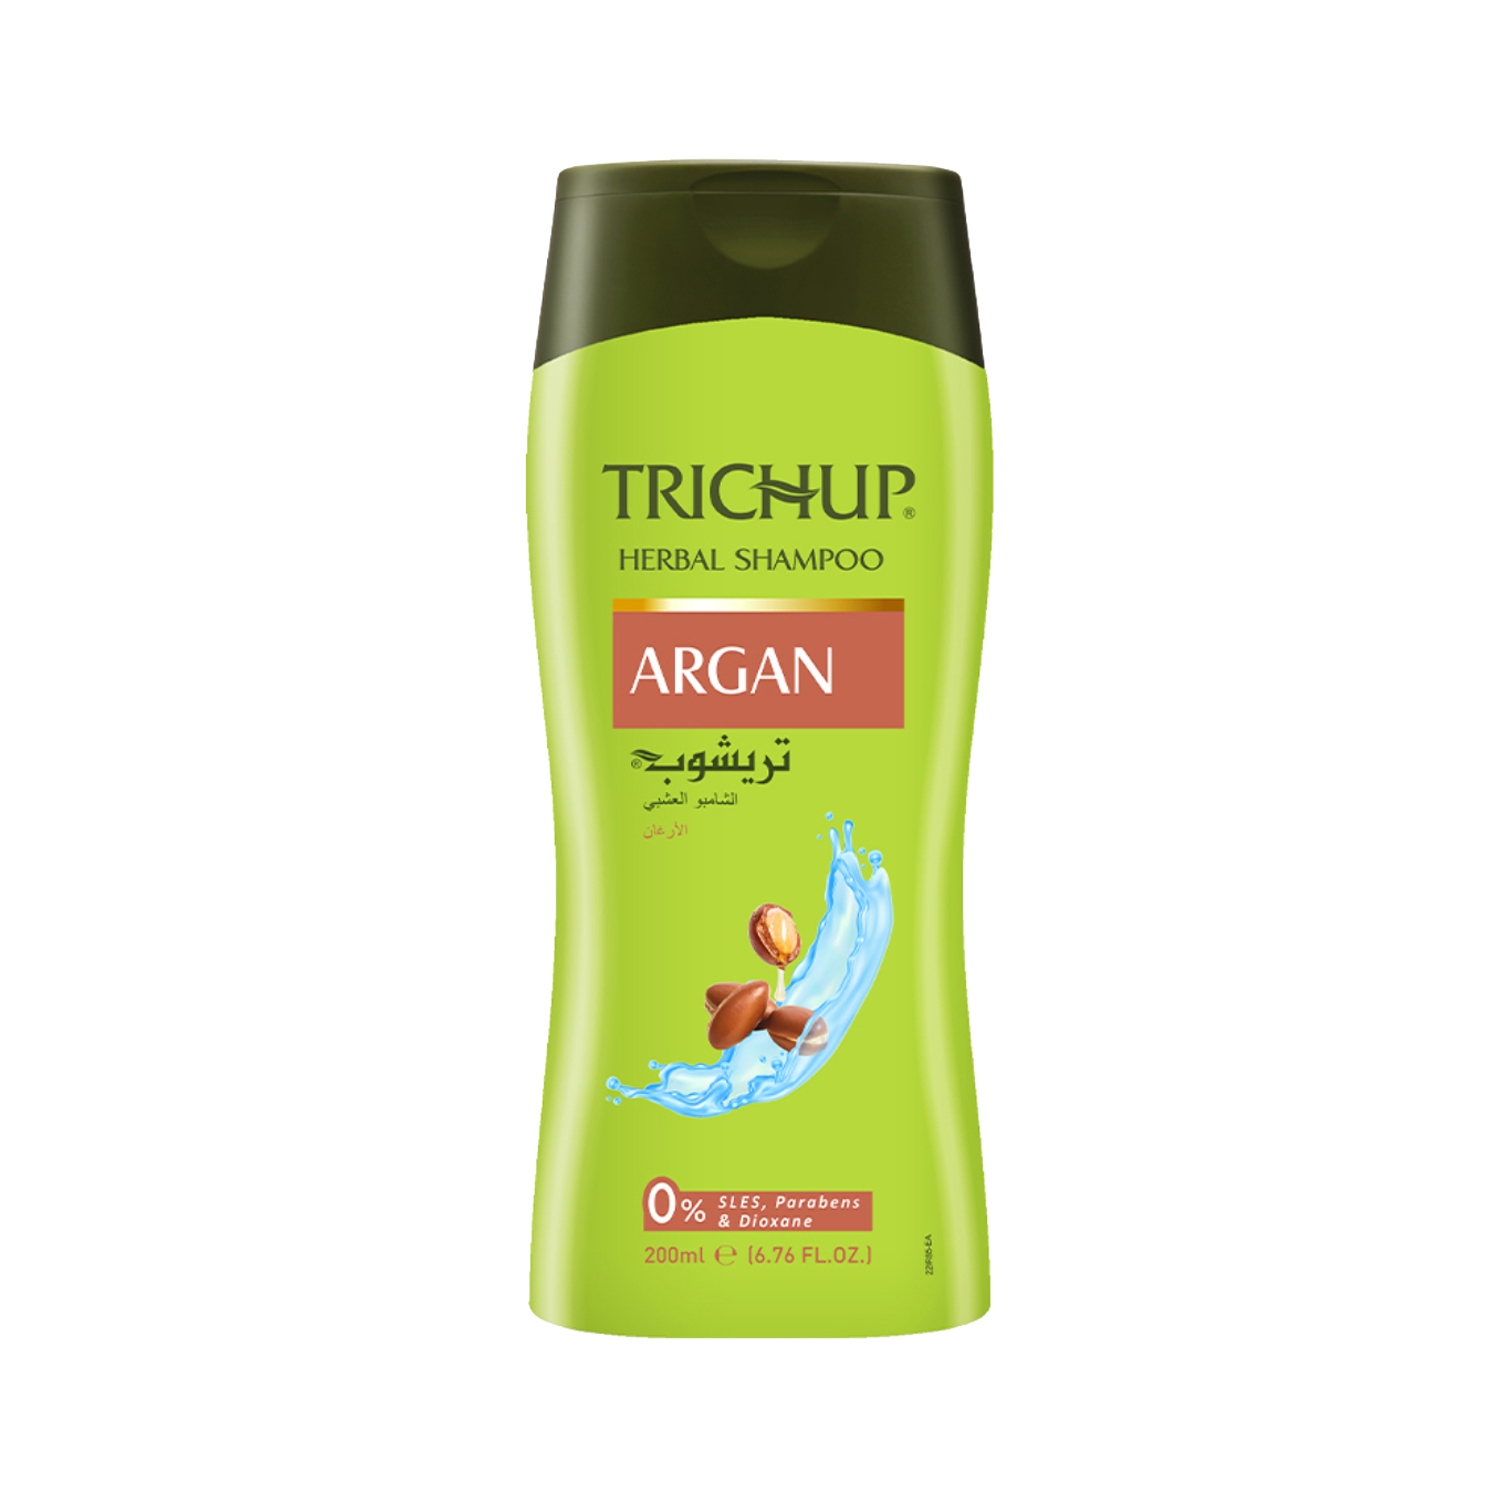 Trichup | Trichup Argan Herbal Shampoo (200ml)